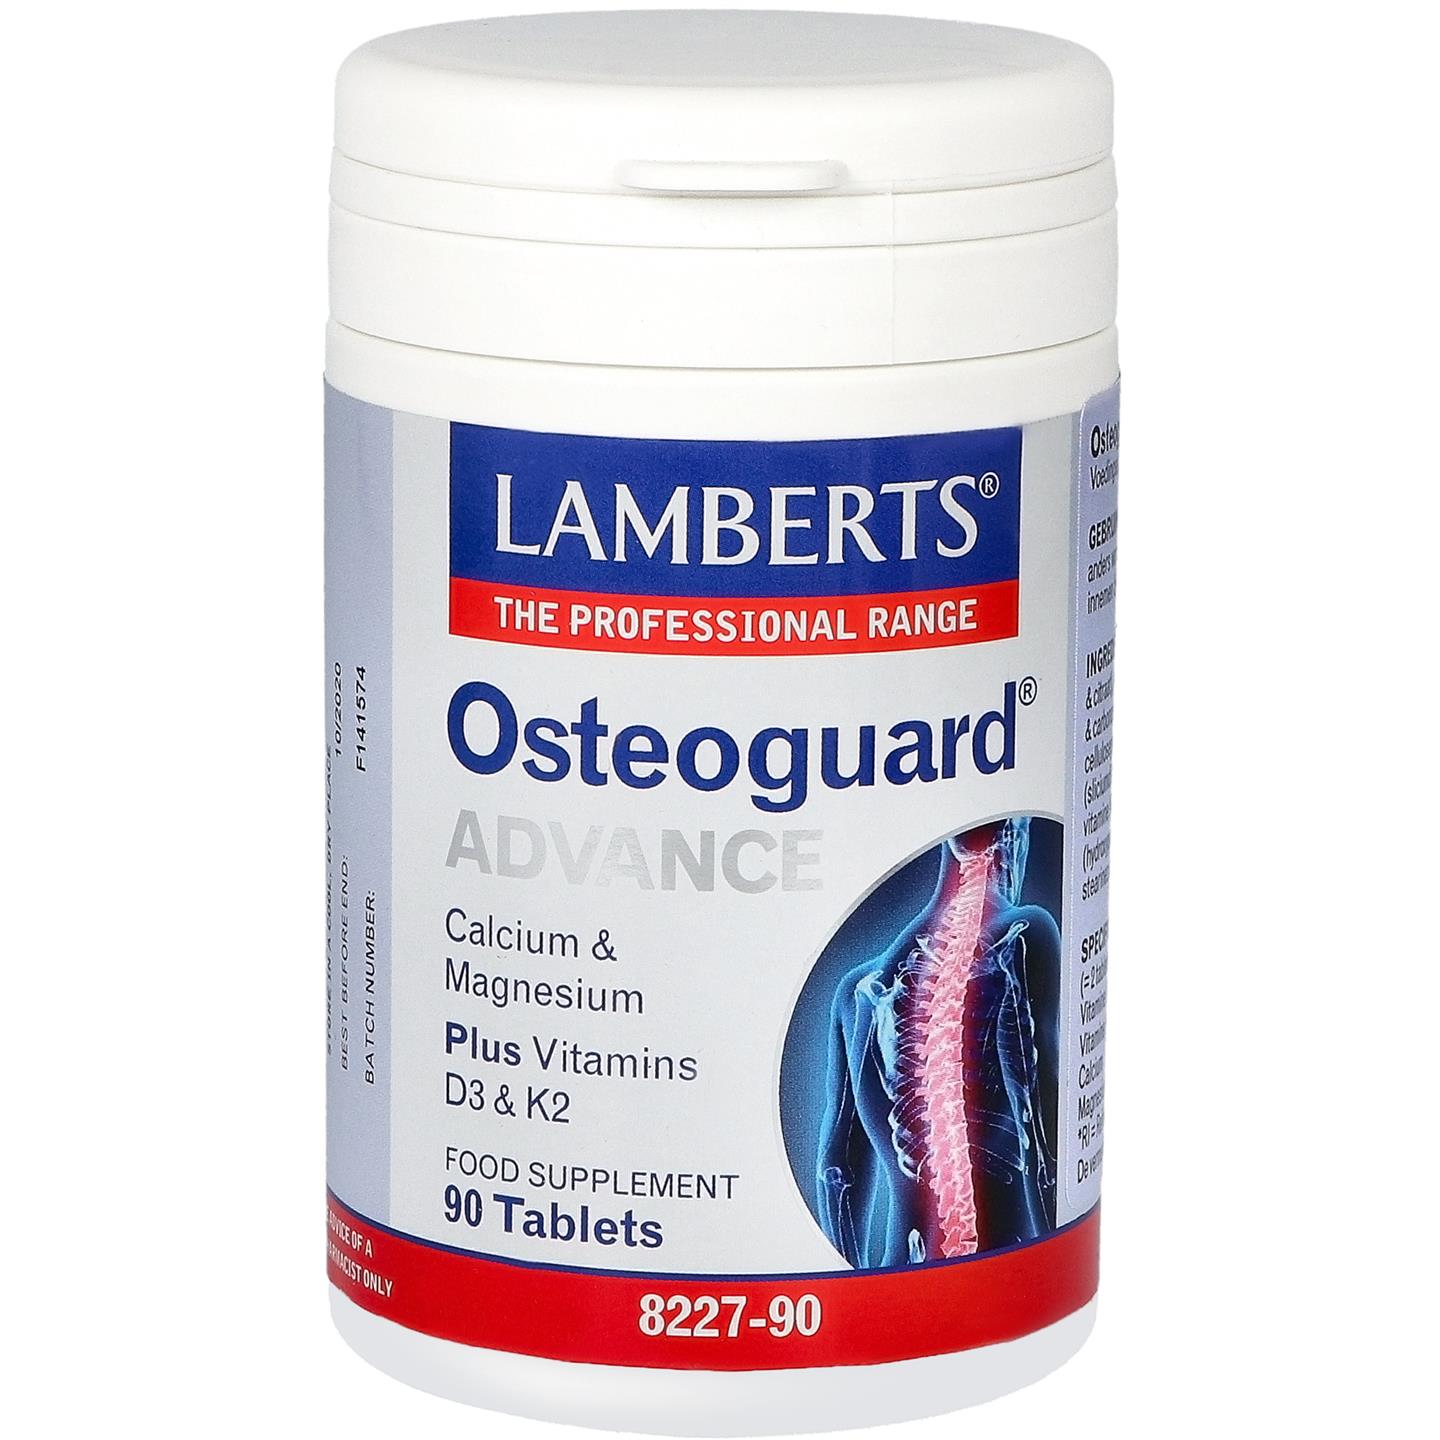 Osteoguard Advance